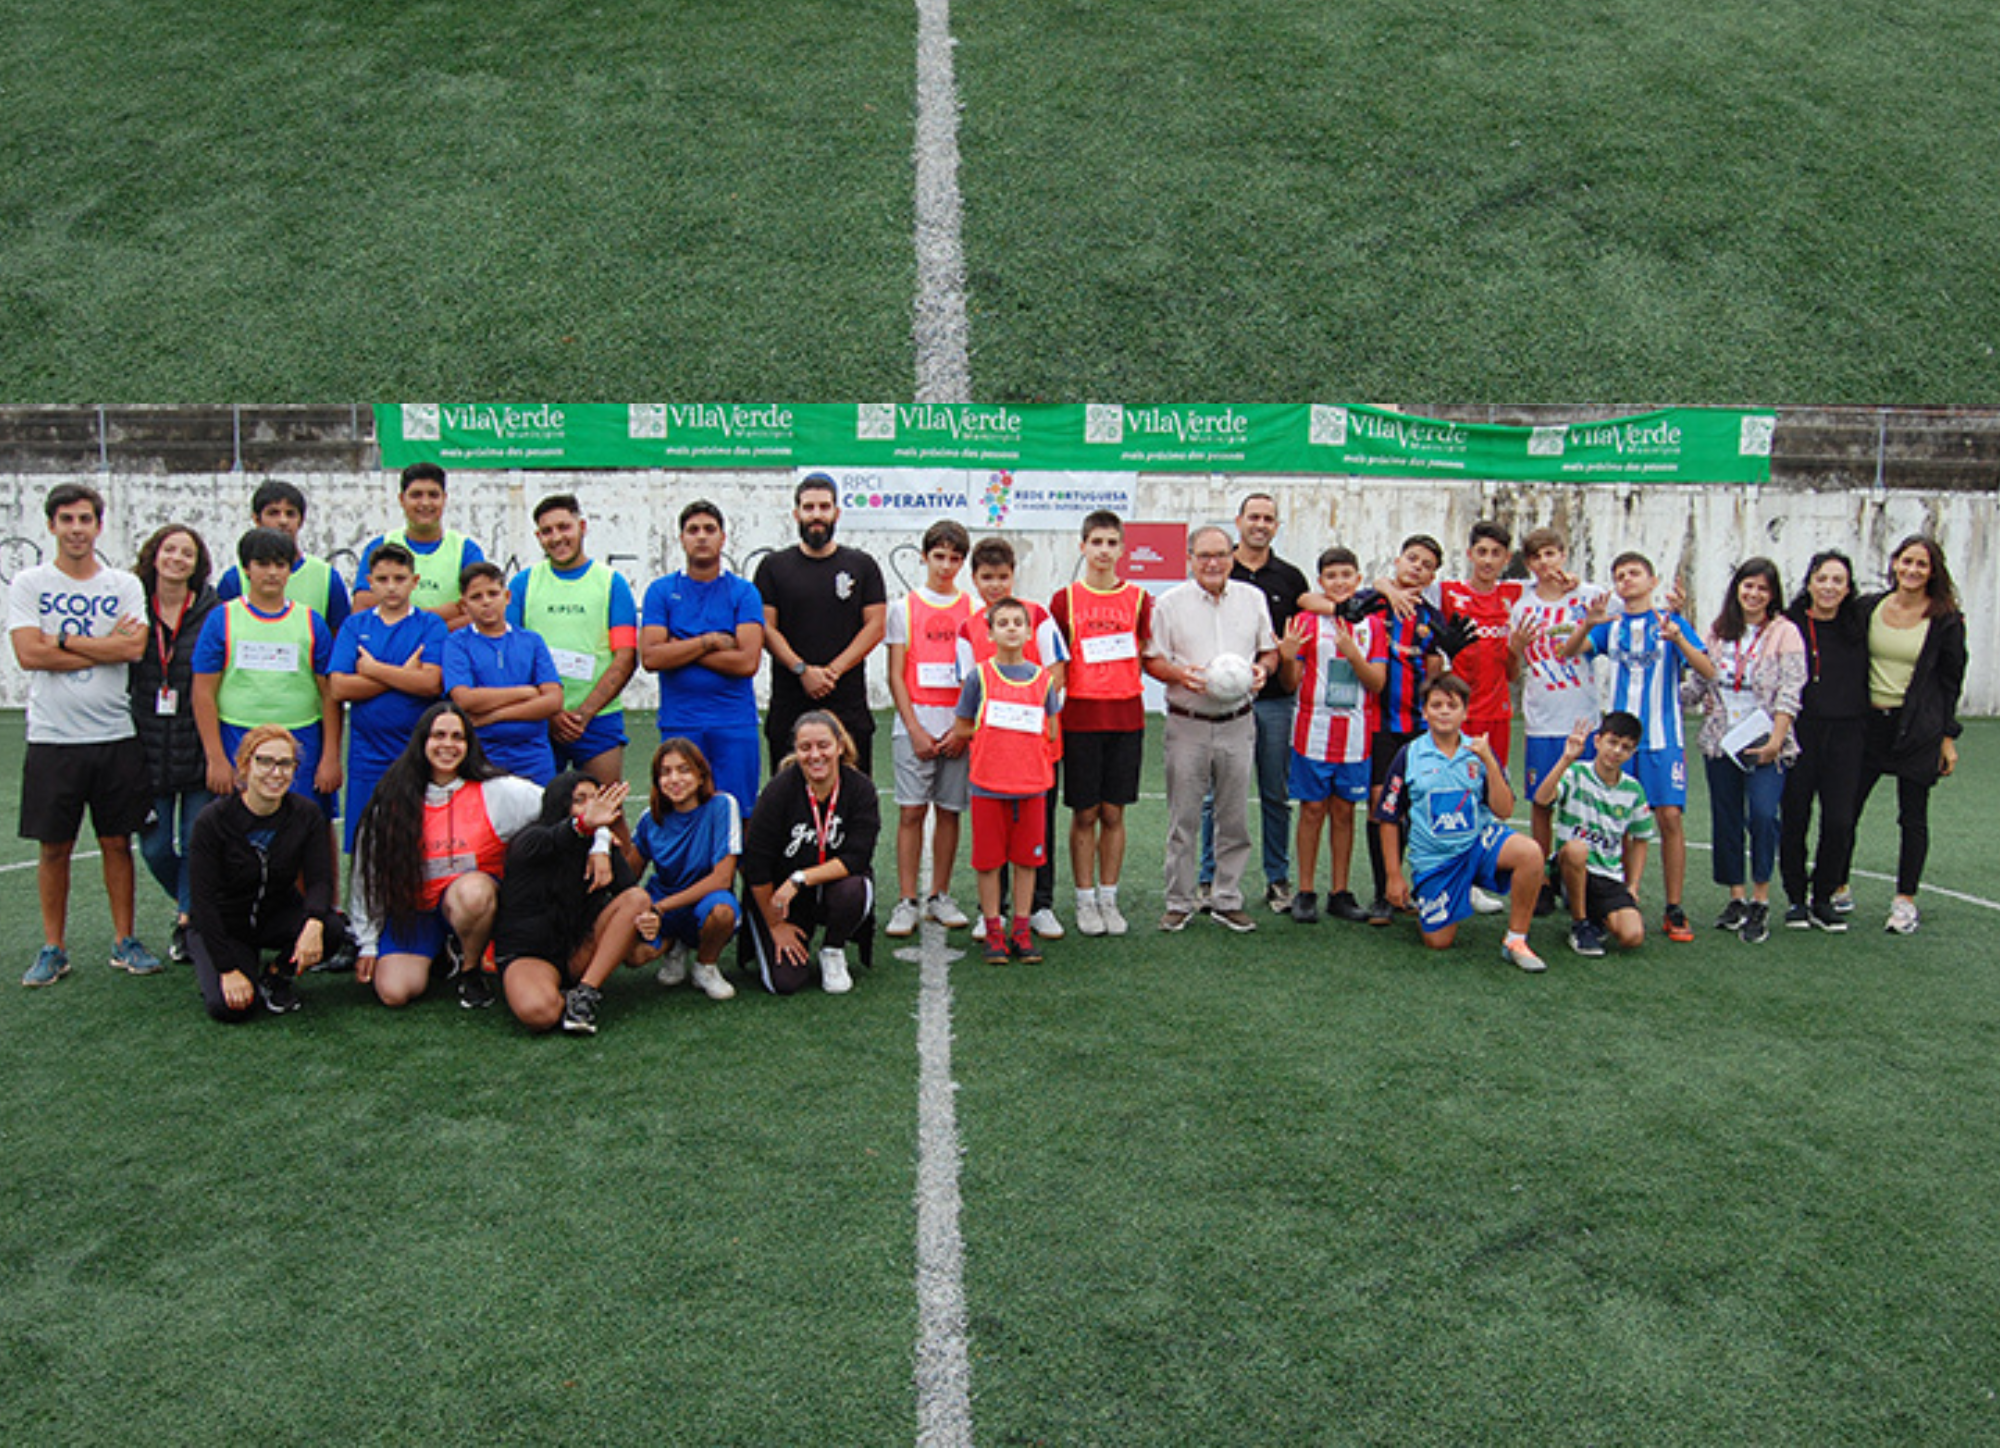 Futebol promove diversidade e interculturalidade em Vila Verde